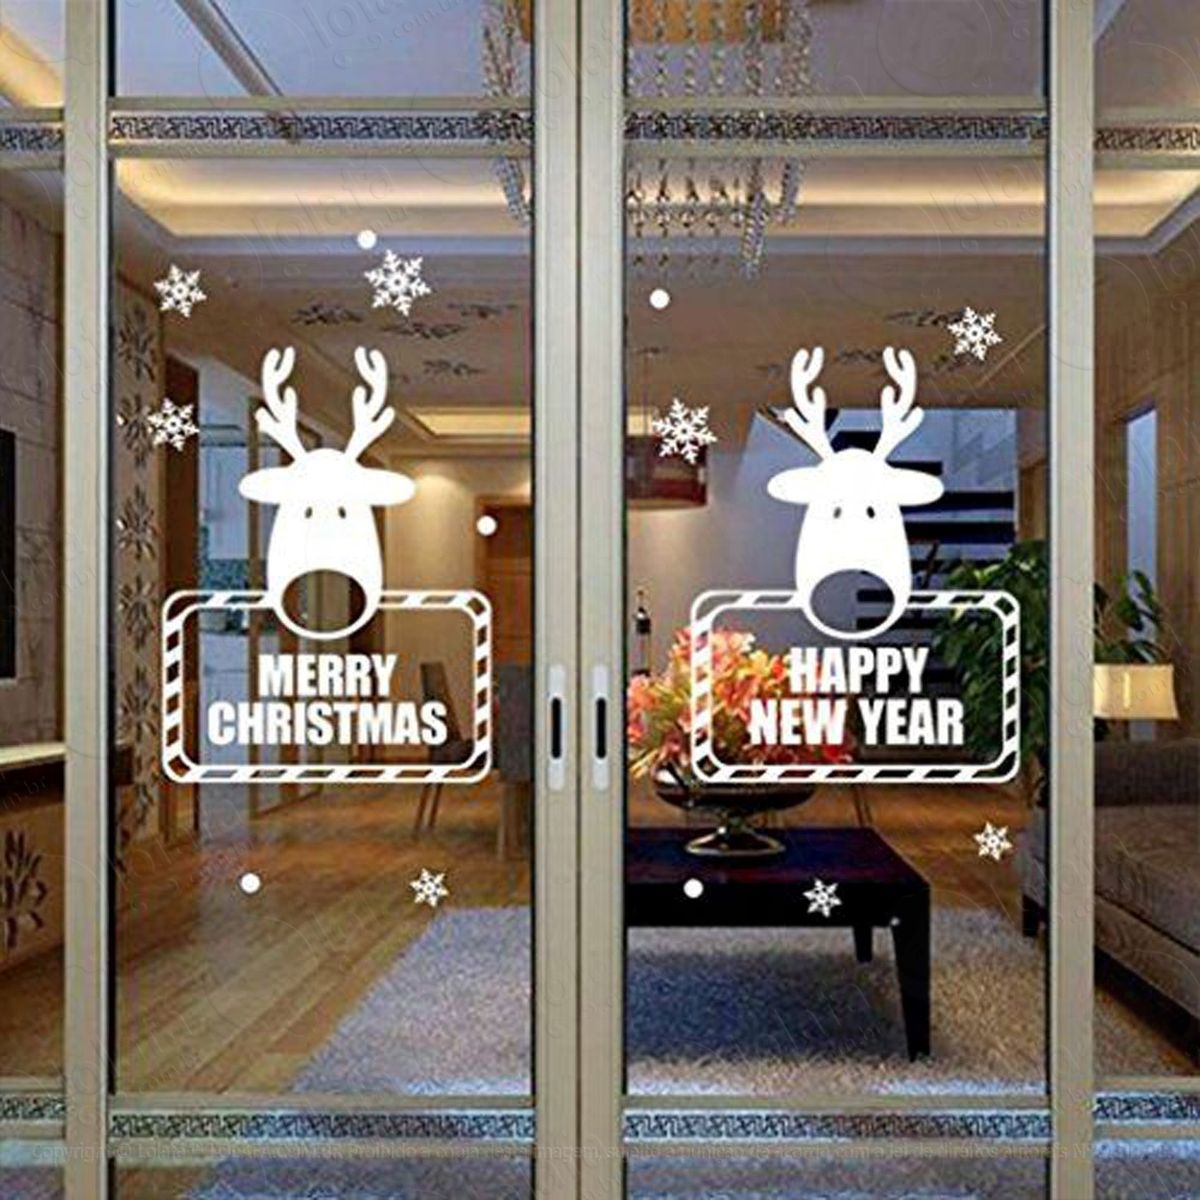 renas ano novo adesivo de natal para vitrine, parede, porta de vidro - decoração natalina mod:303